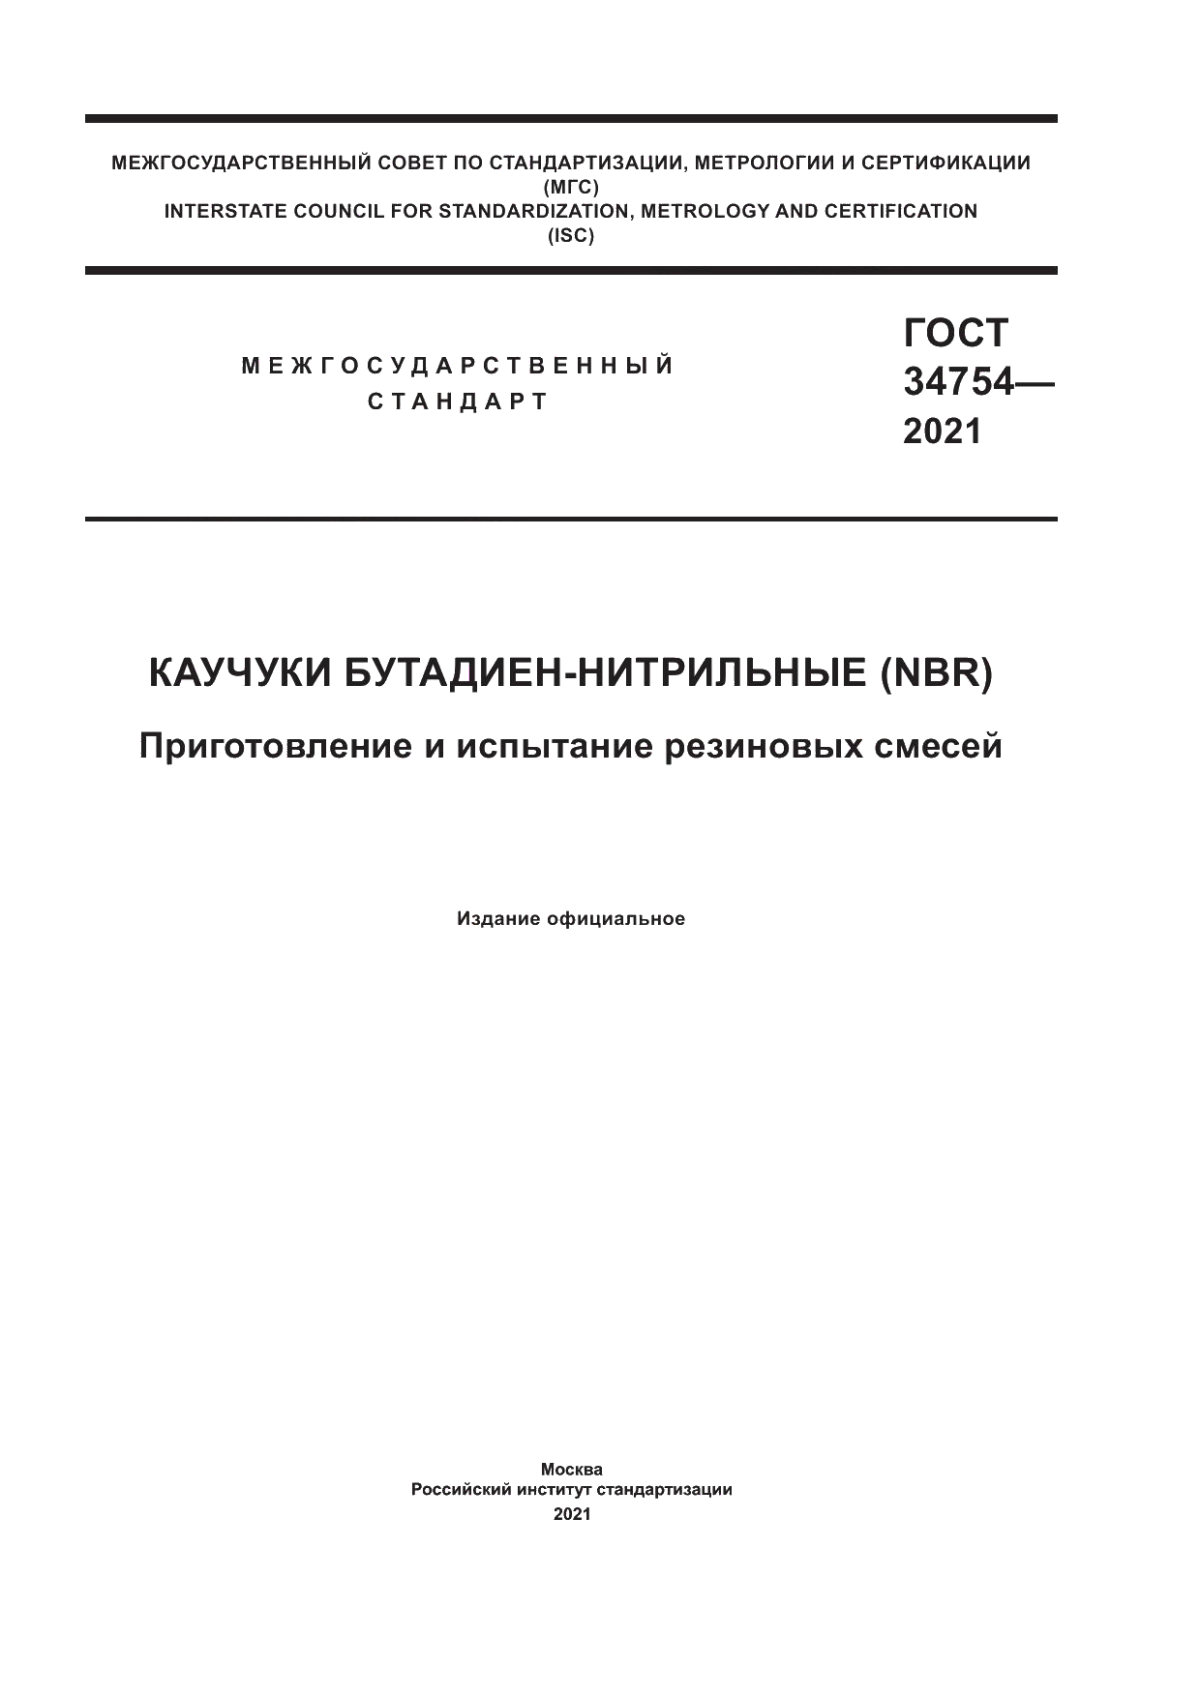 ГОСТ 34754-2021 Каучуки бутадиен-нитрильные (NBR). Приготовление и испытание резиновых смесей